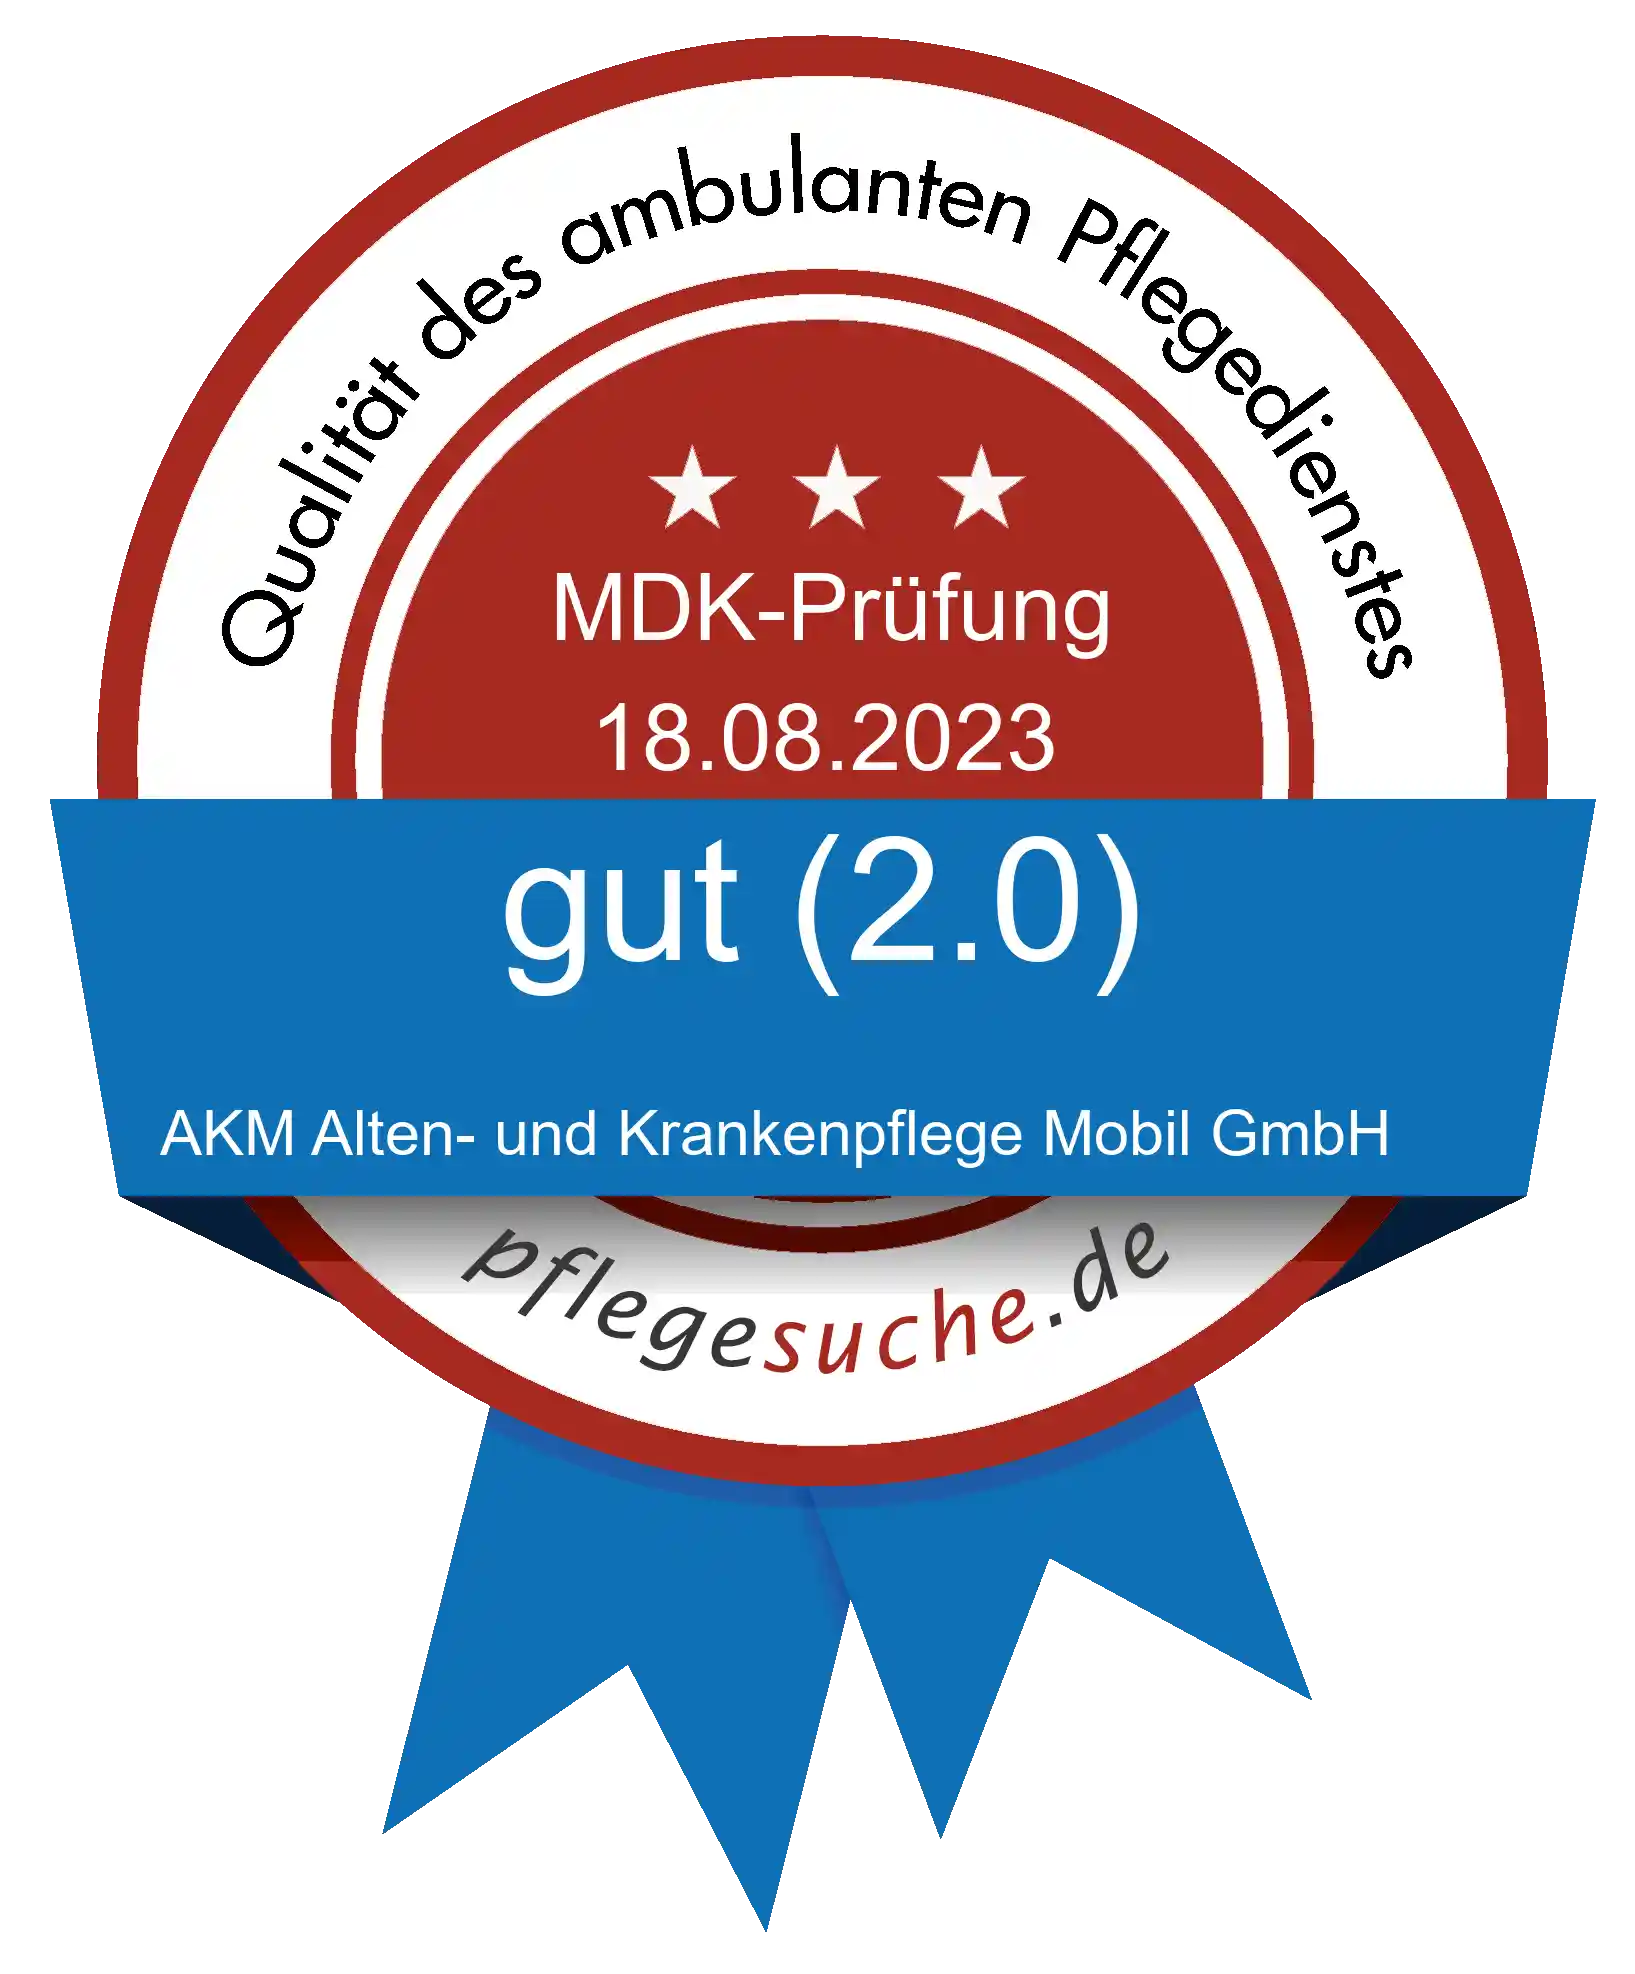 Siegel Benotung: AKM Alten- und Krankenpflege Mobil GmbH